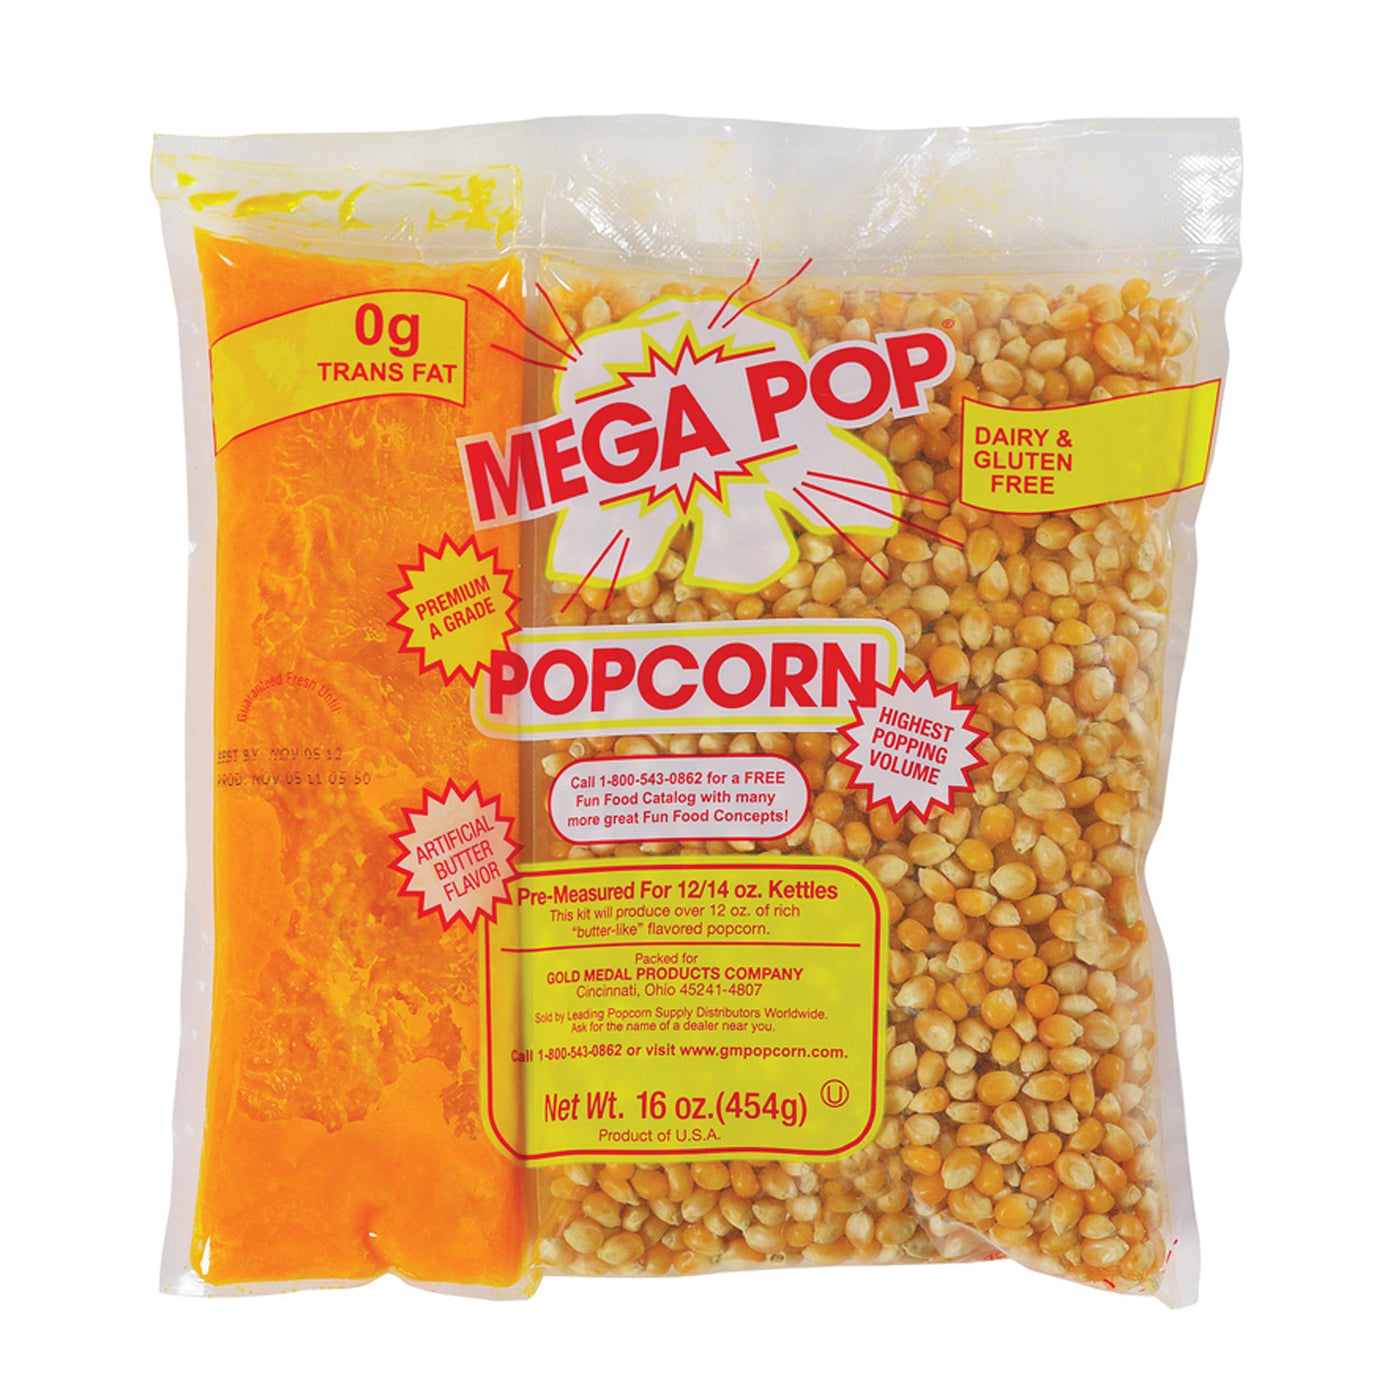 https://shop.gmpopcorn.com/cdn/shop/products/2839-mega-pop-popcorn_1400x.jpg?v=1653425615